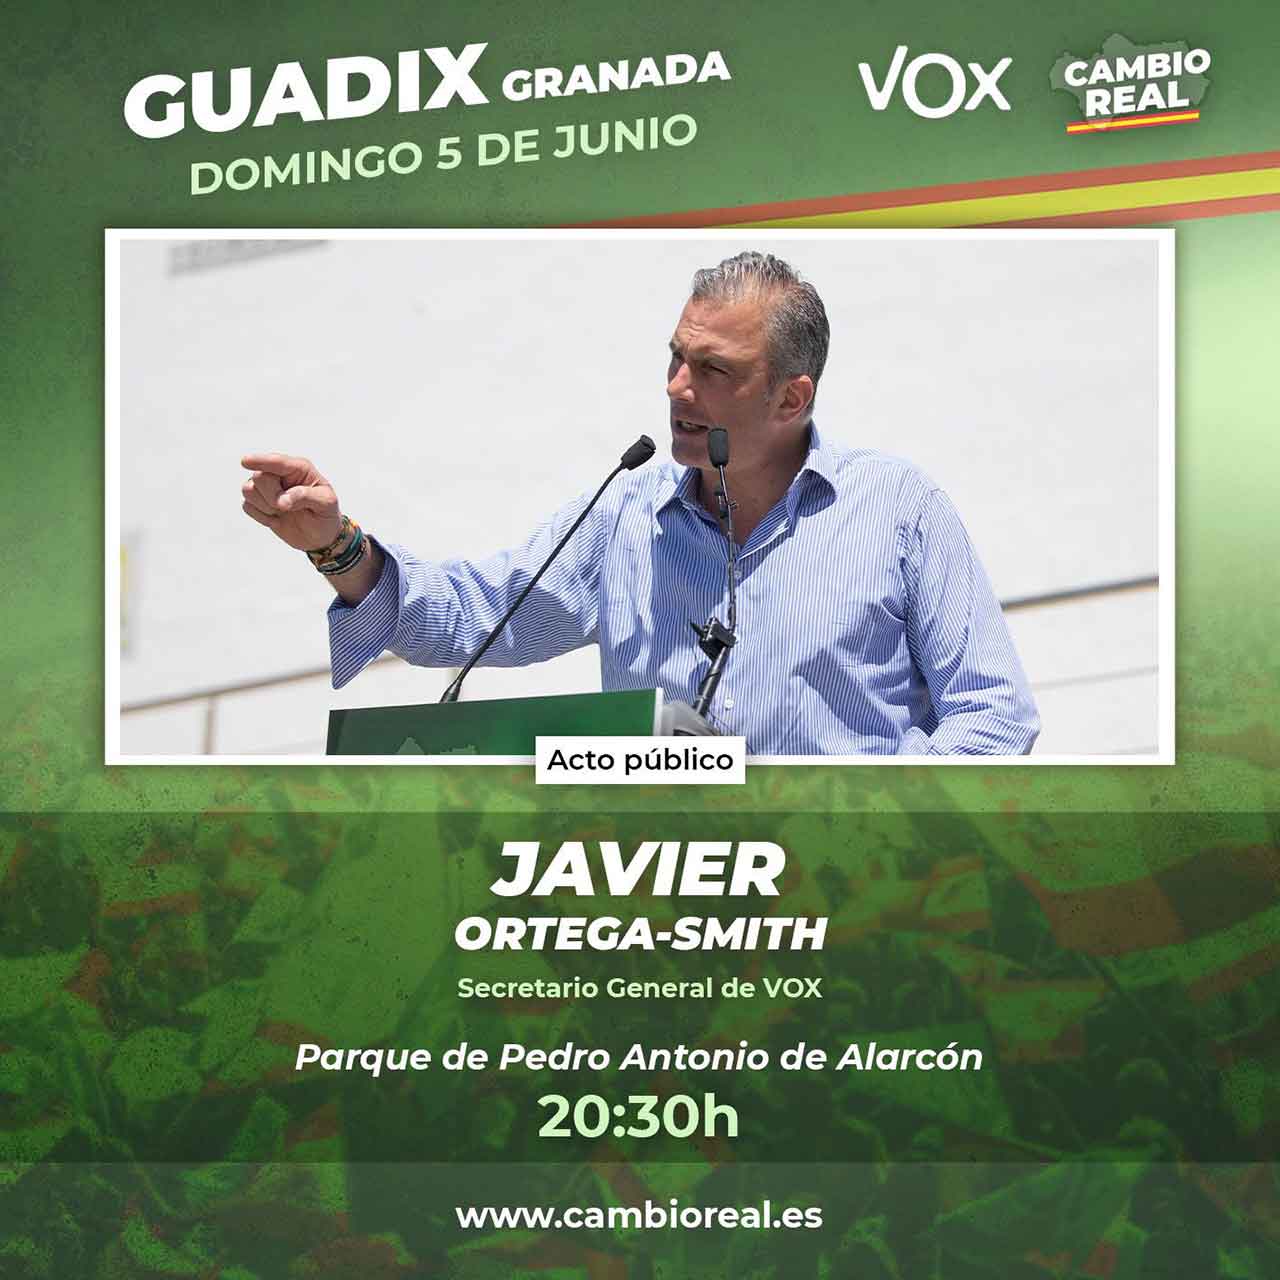 Ortega Smith Vox en Guadix